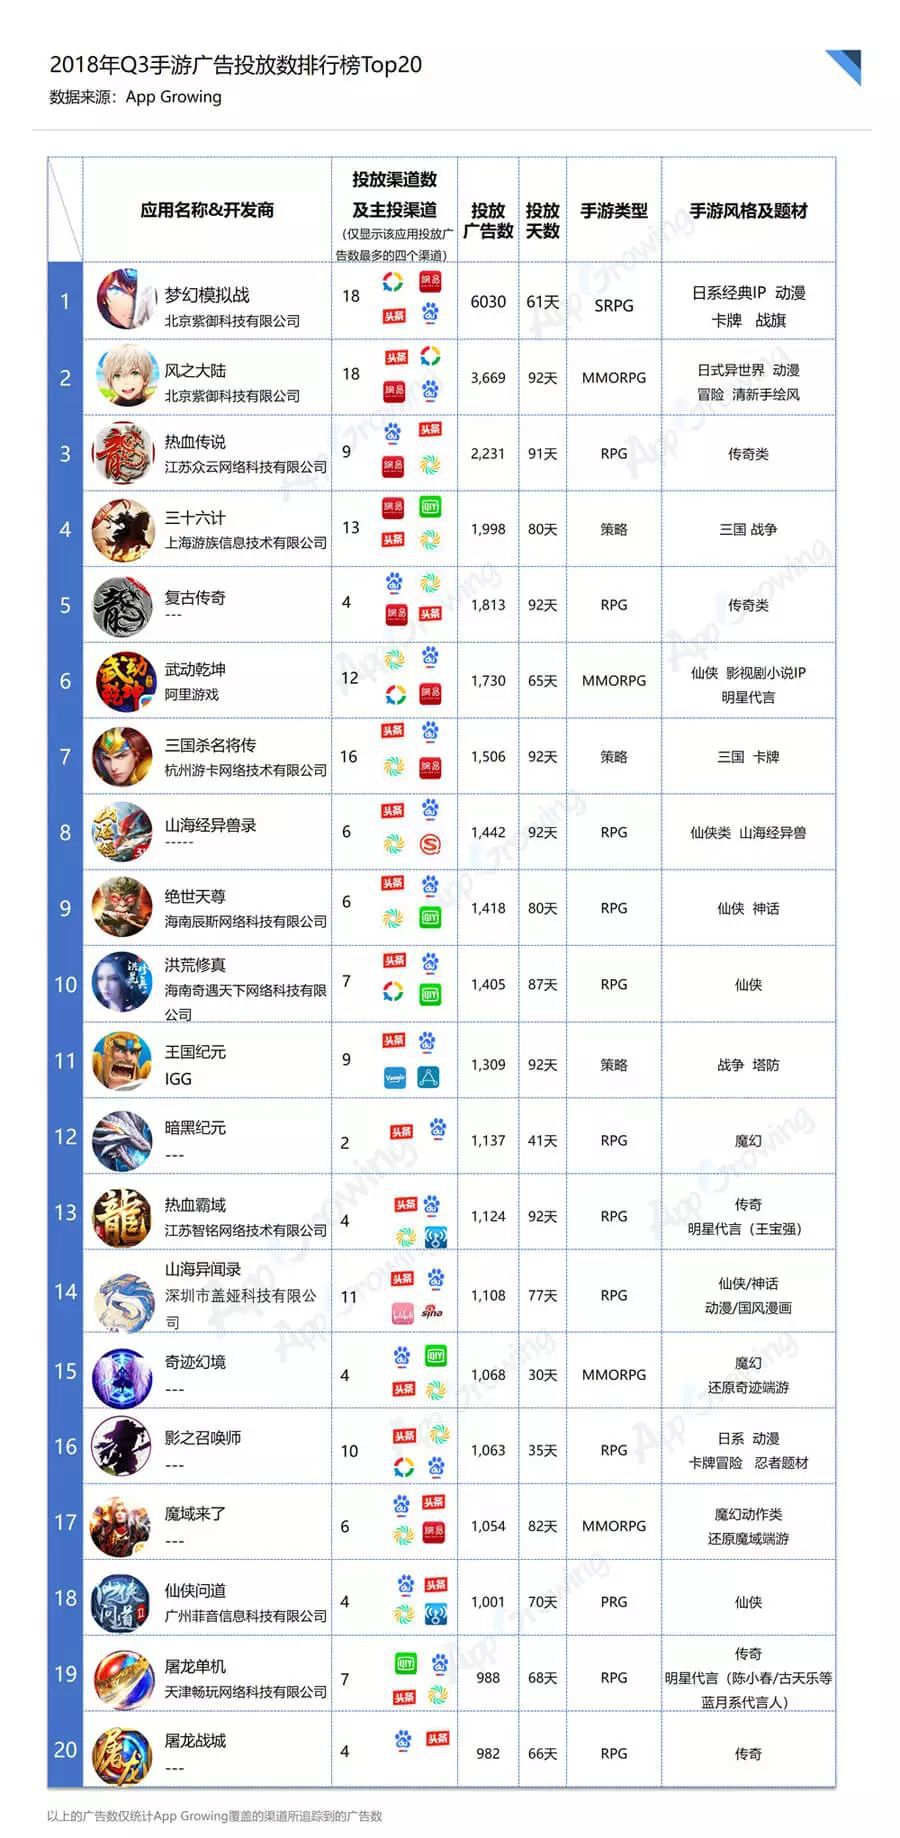 盘点广告投放数Top20手游风云榜，北京紫御科技公司两款日系动漫手游分类第一，第二